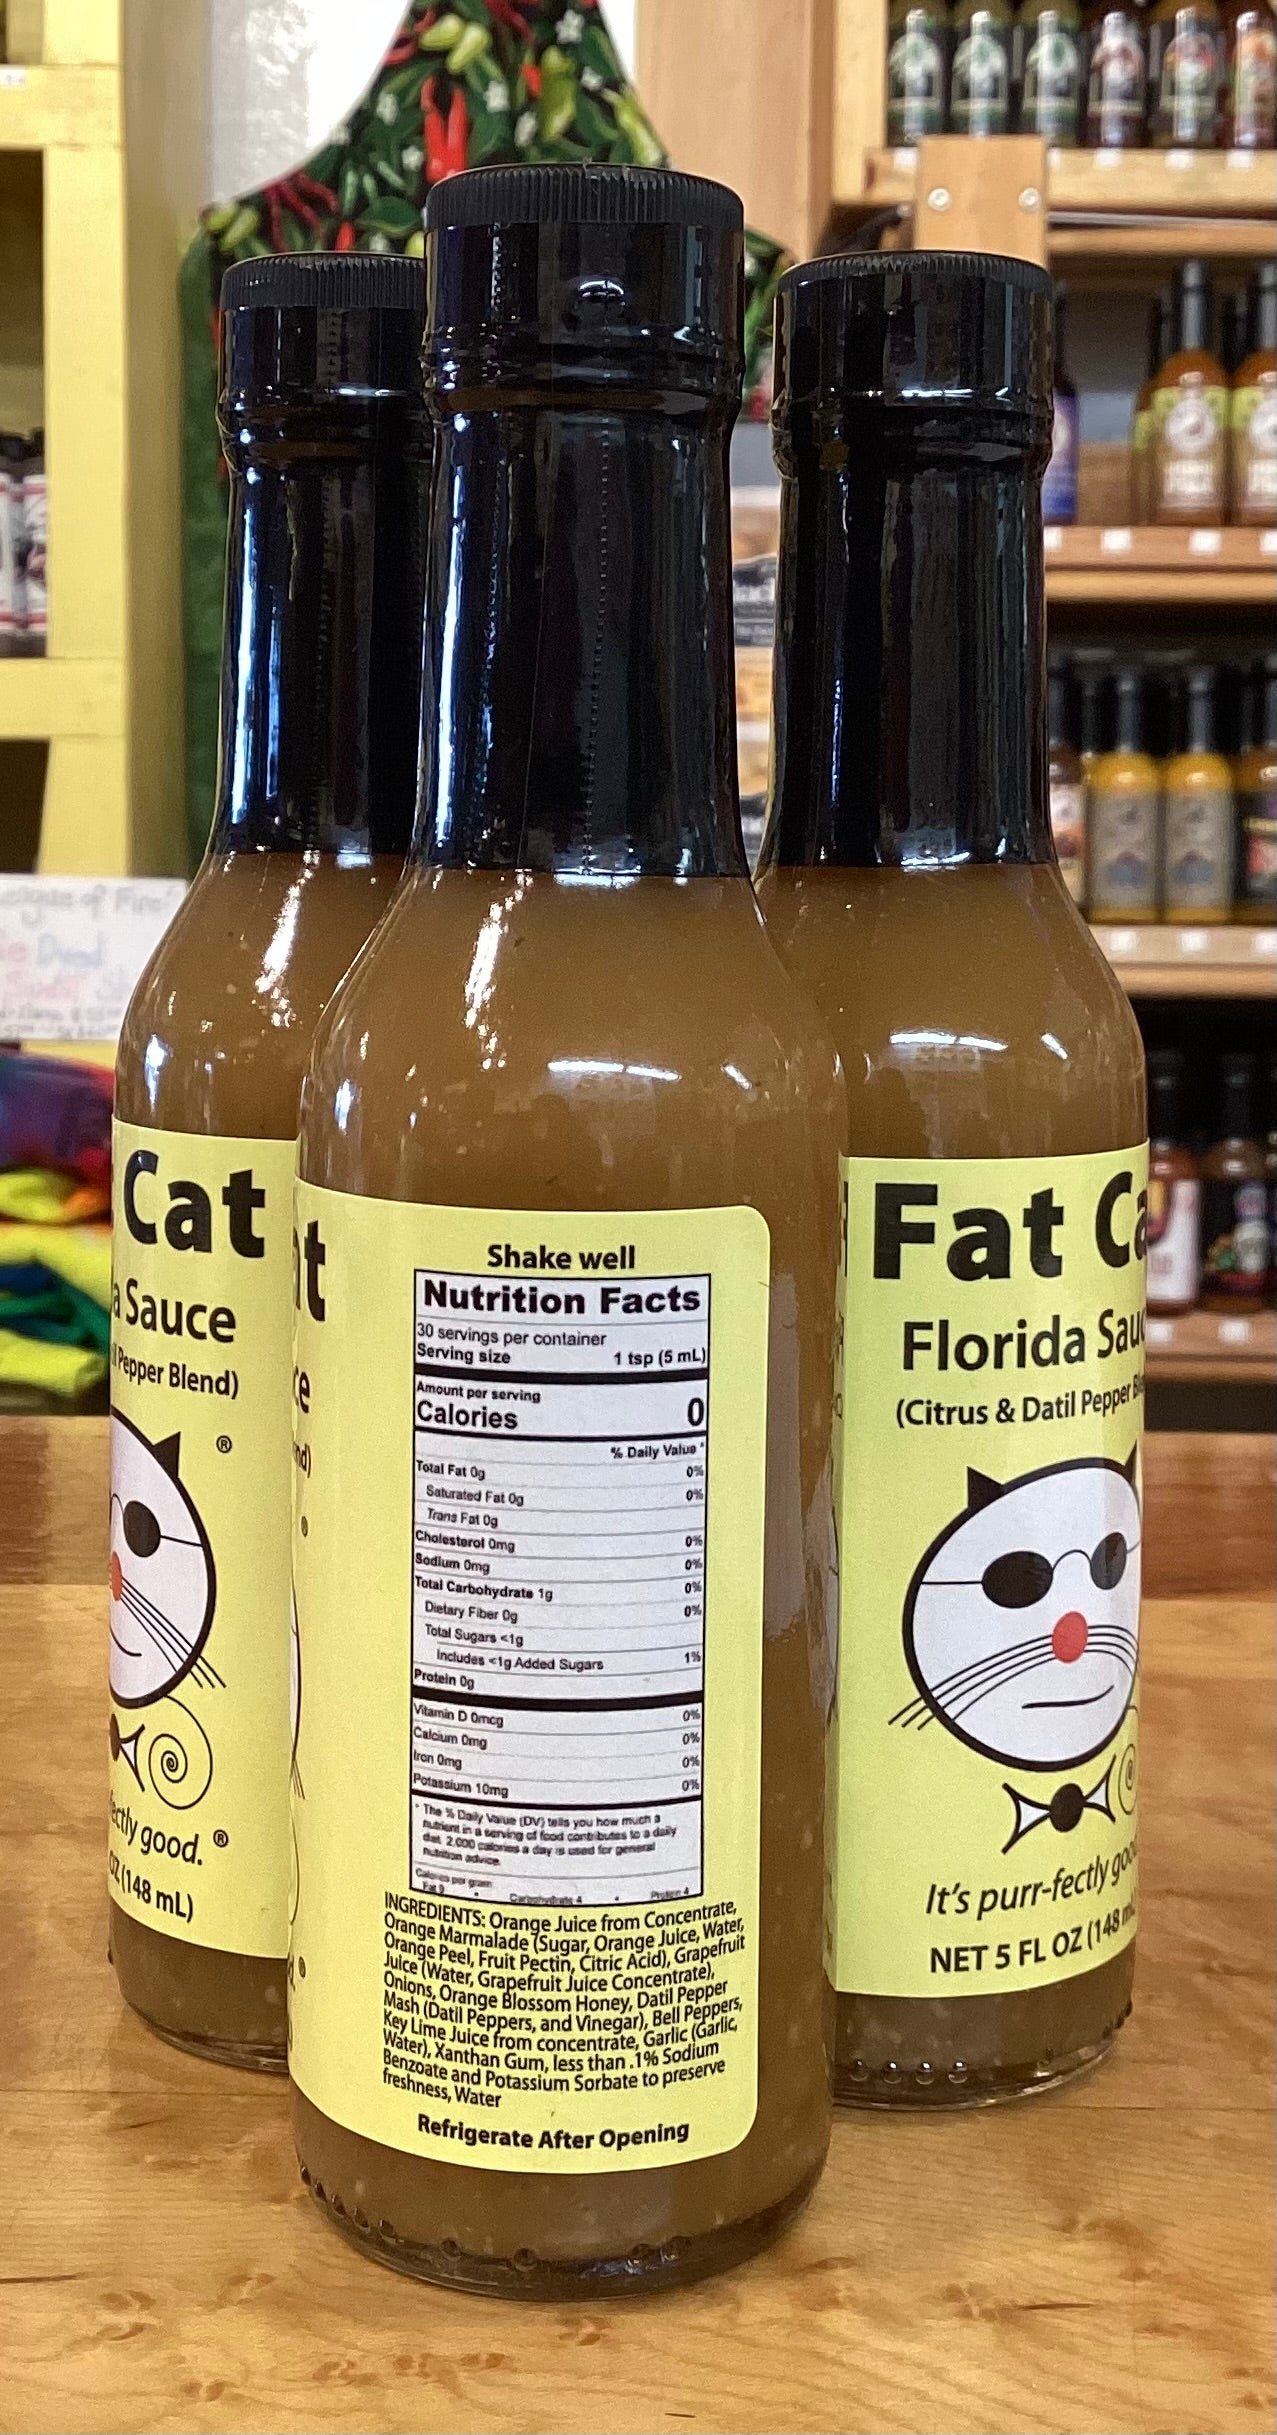 Fat Cat Florida Hot Sauce